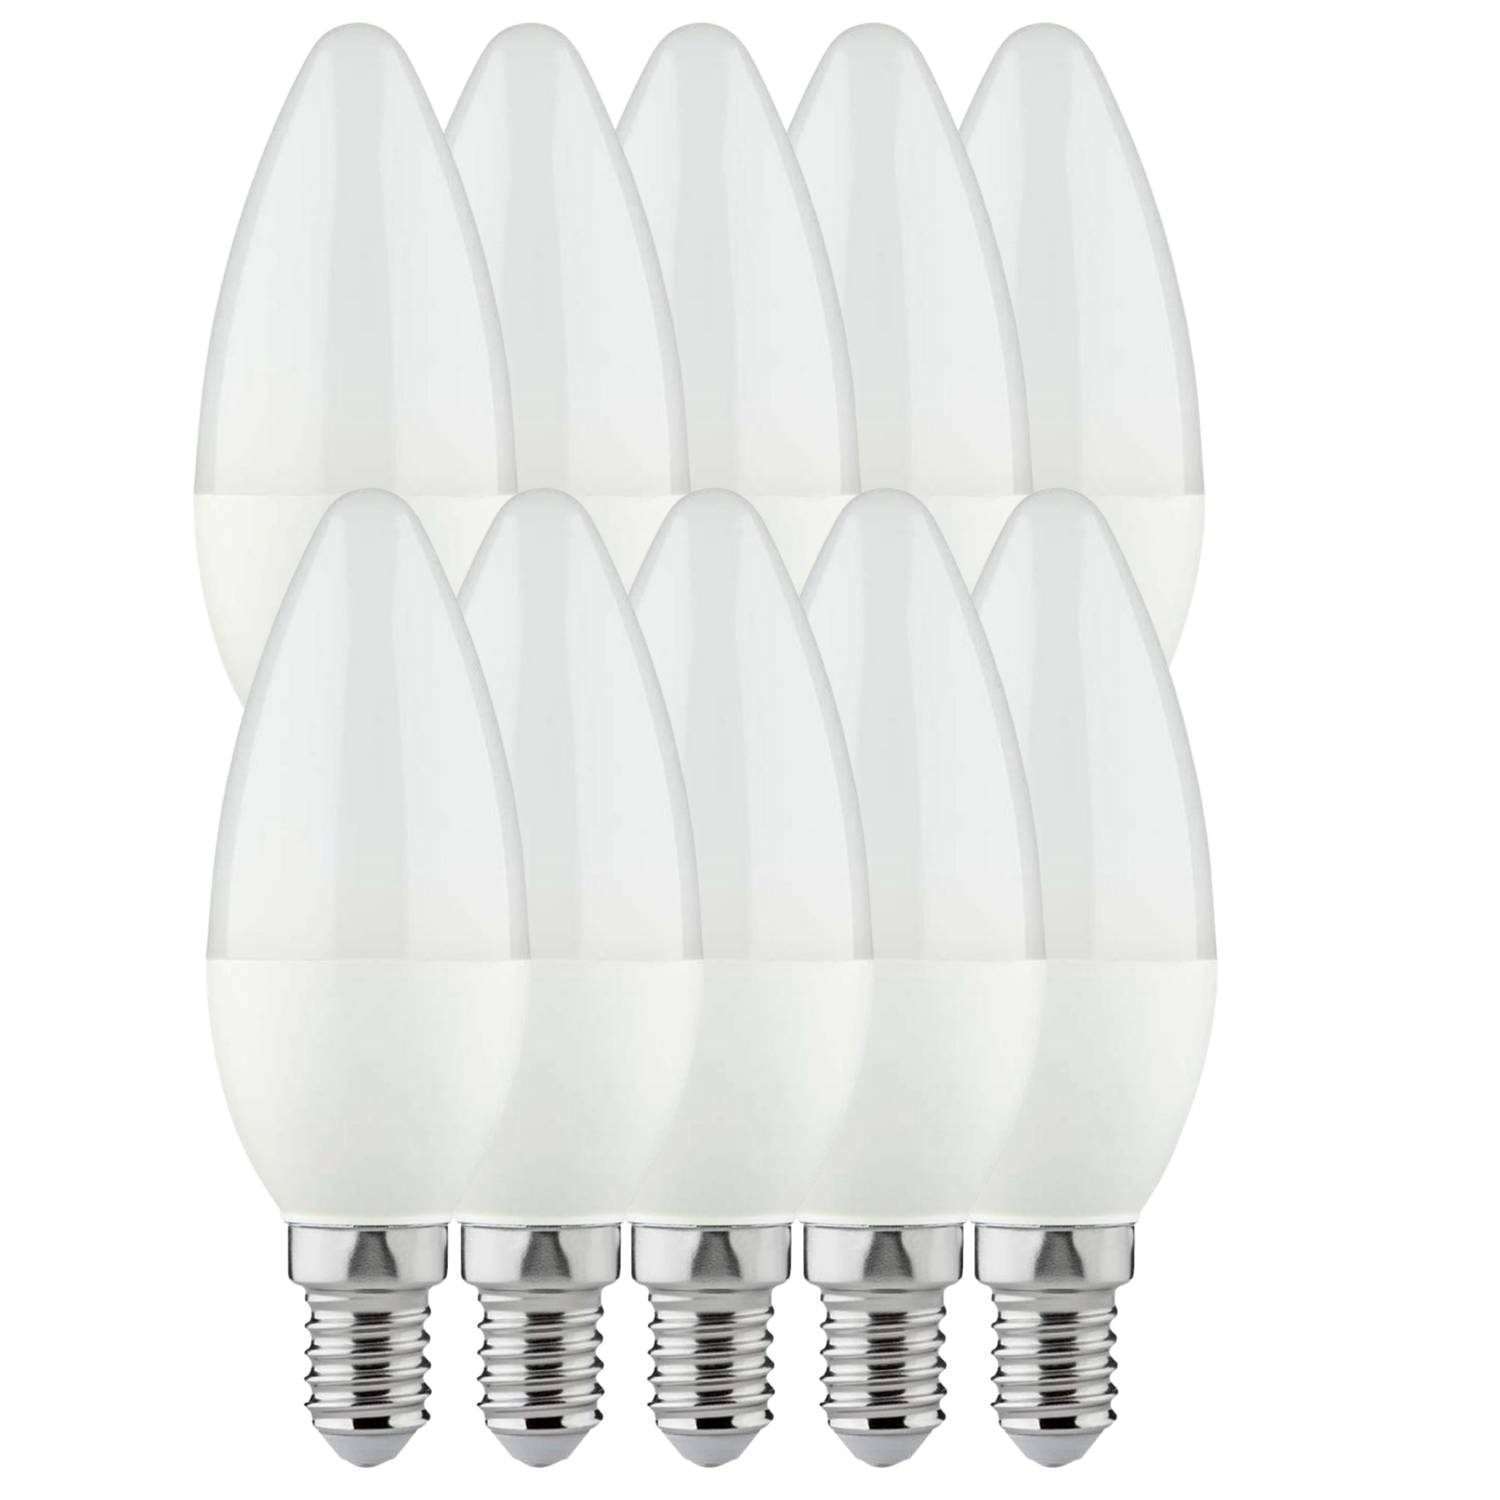 Longlife LED lampen voordeelverpakking met kleine E14 fitting - Kaars - 10 x LED kaarslamp